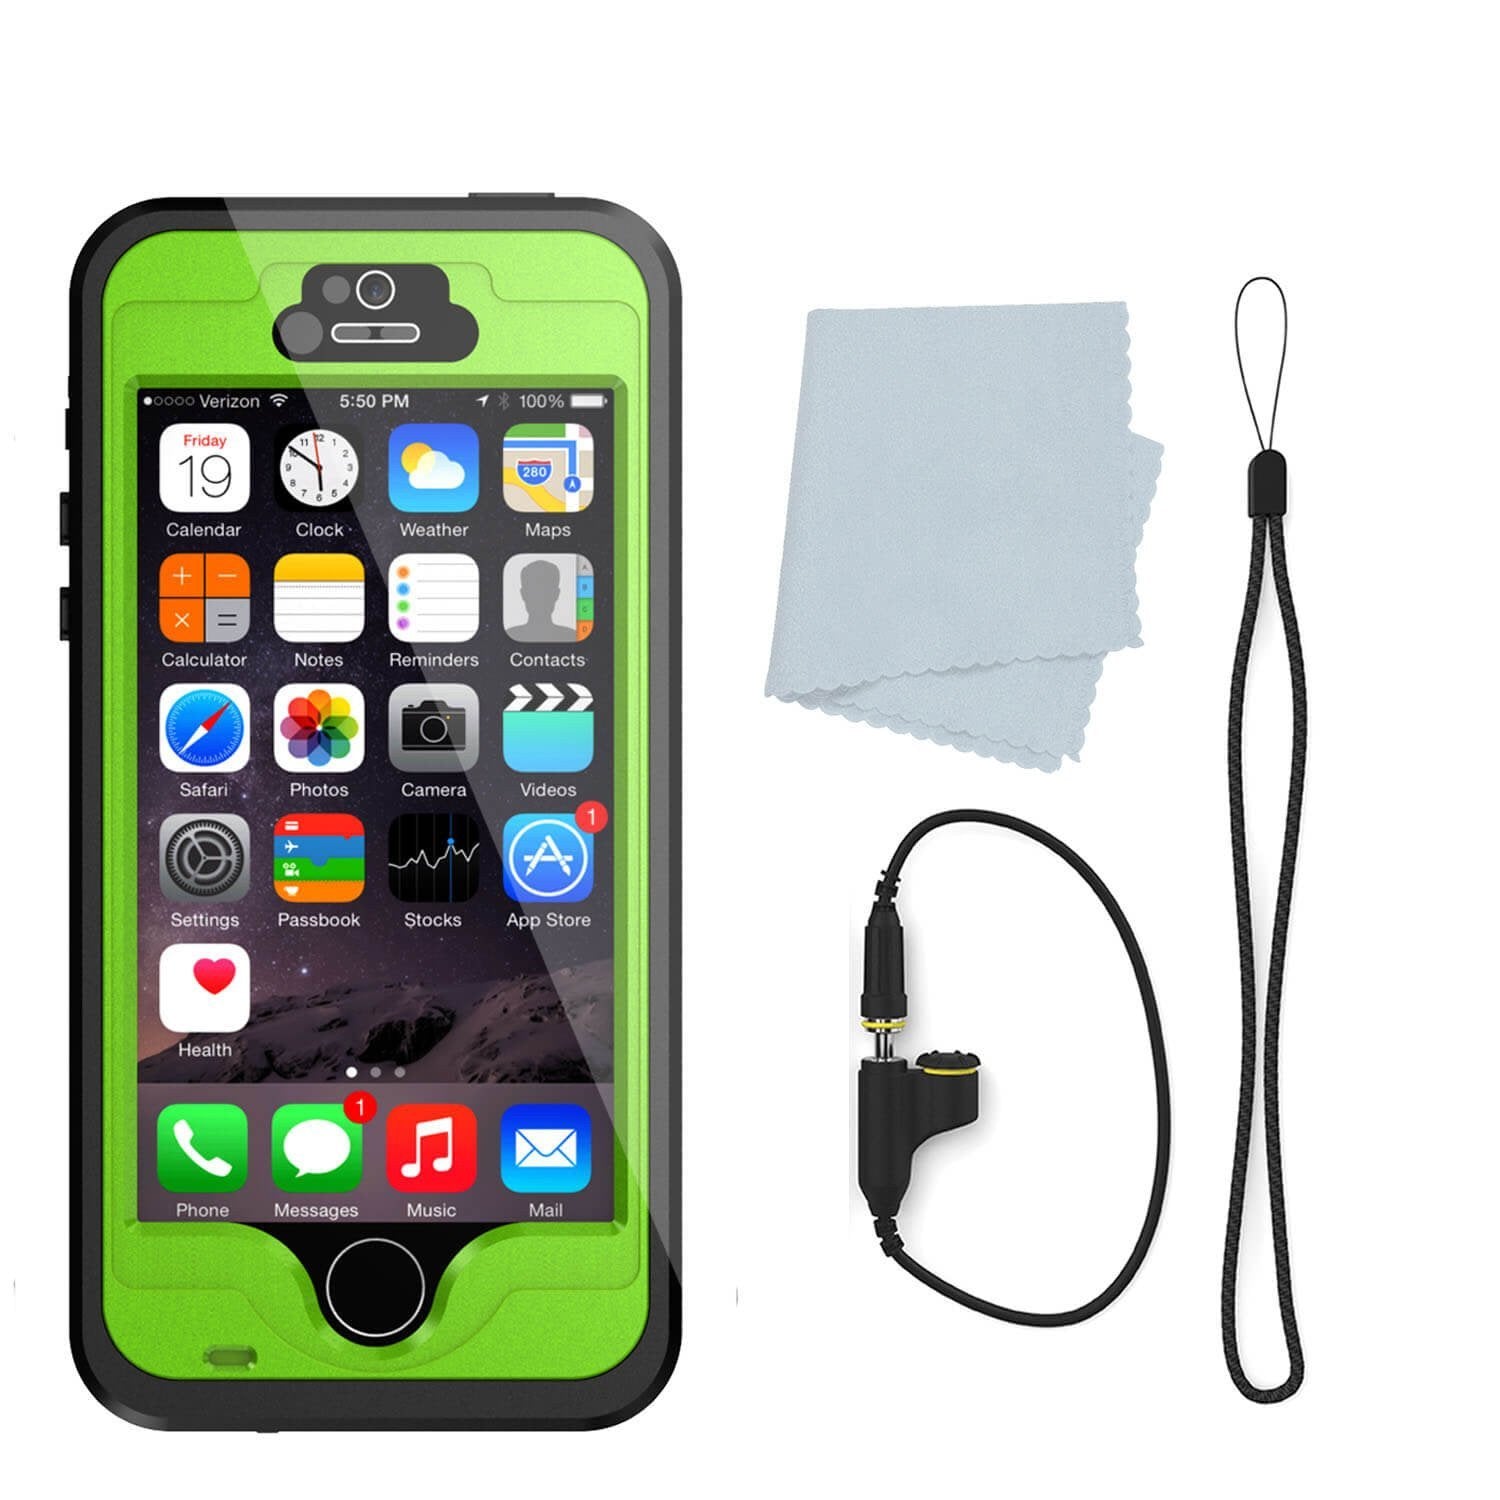 iPhone SE/5S/5 Waterproof Case, PunkCase StudStar Light Green Shock/Dirt Proof | Lifetime Warranty